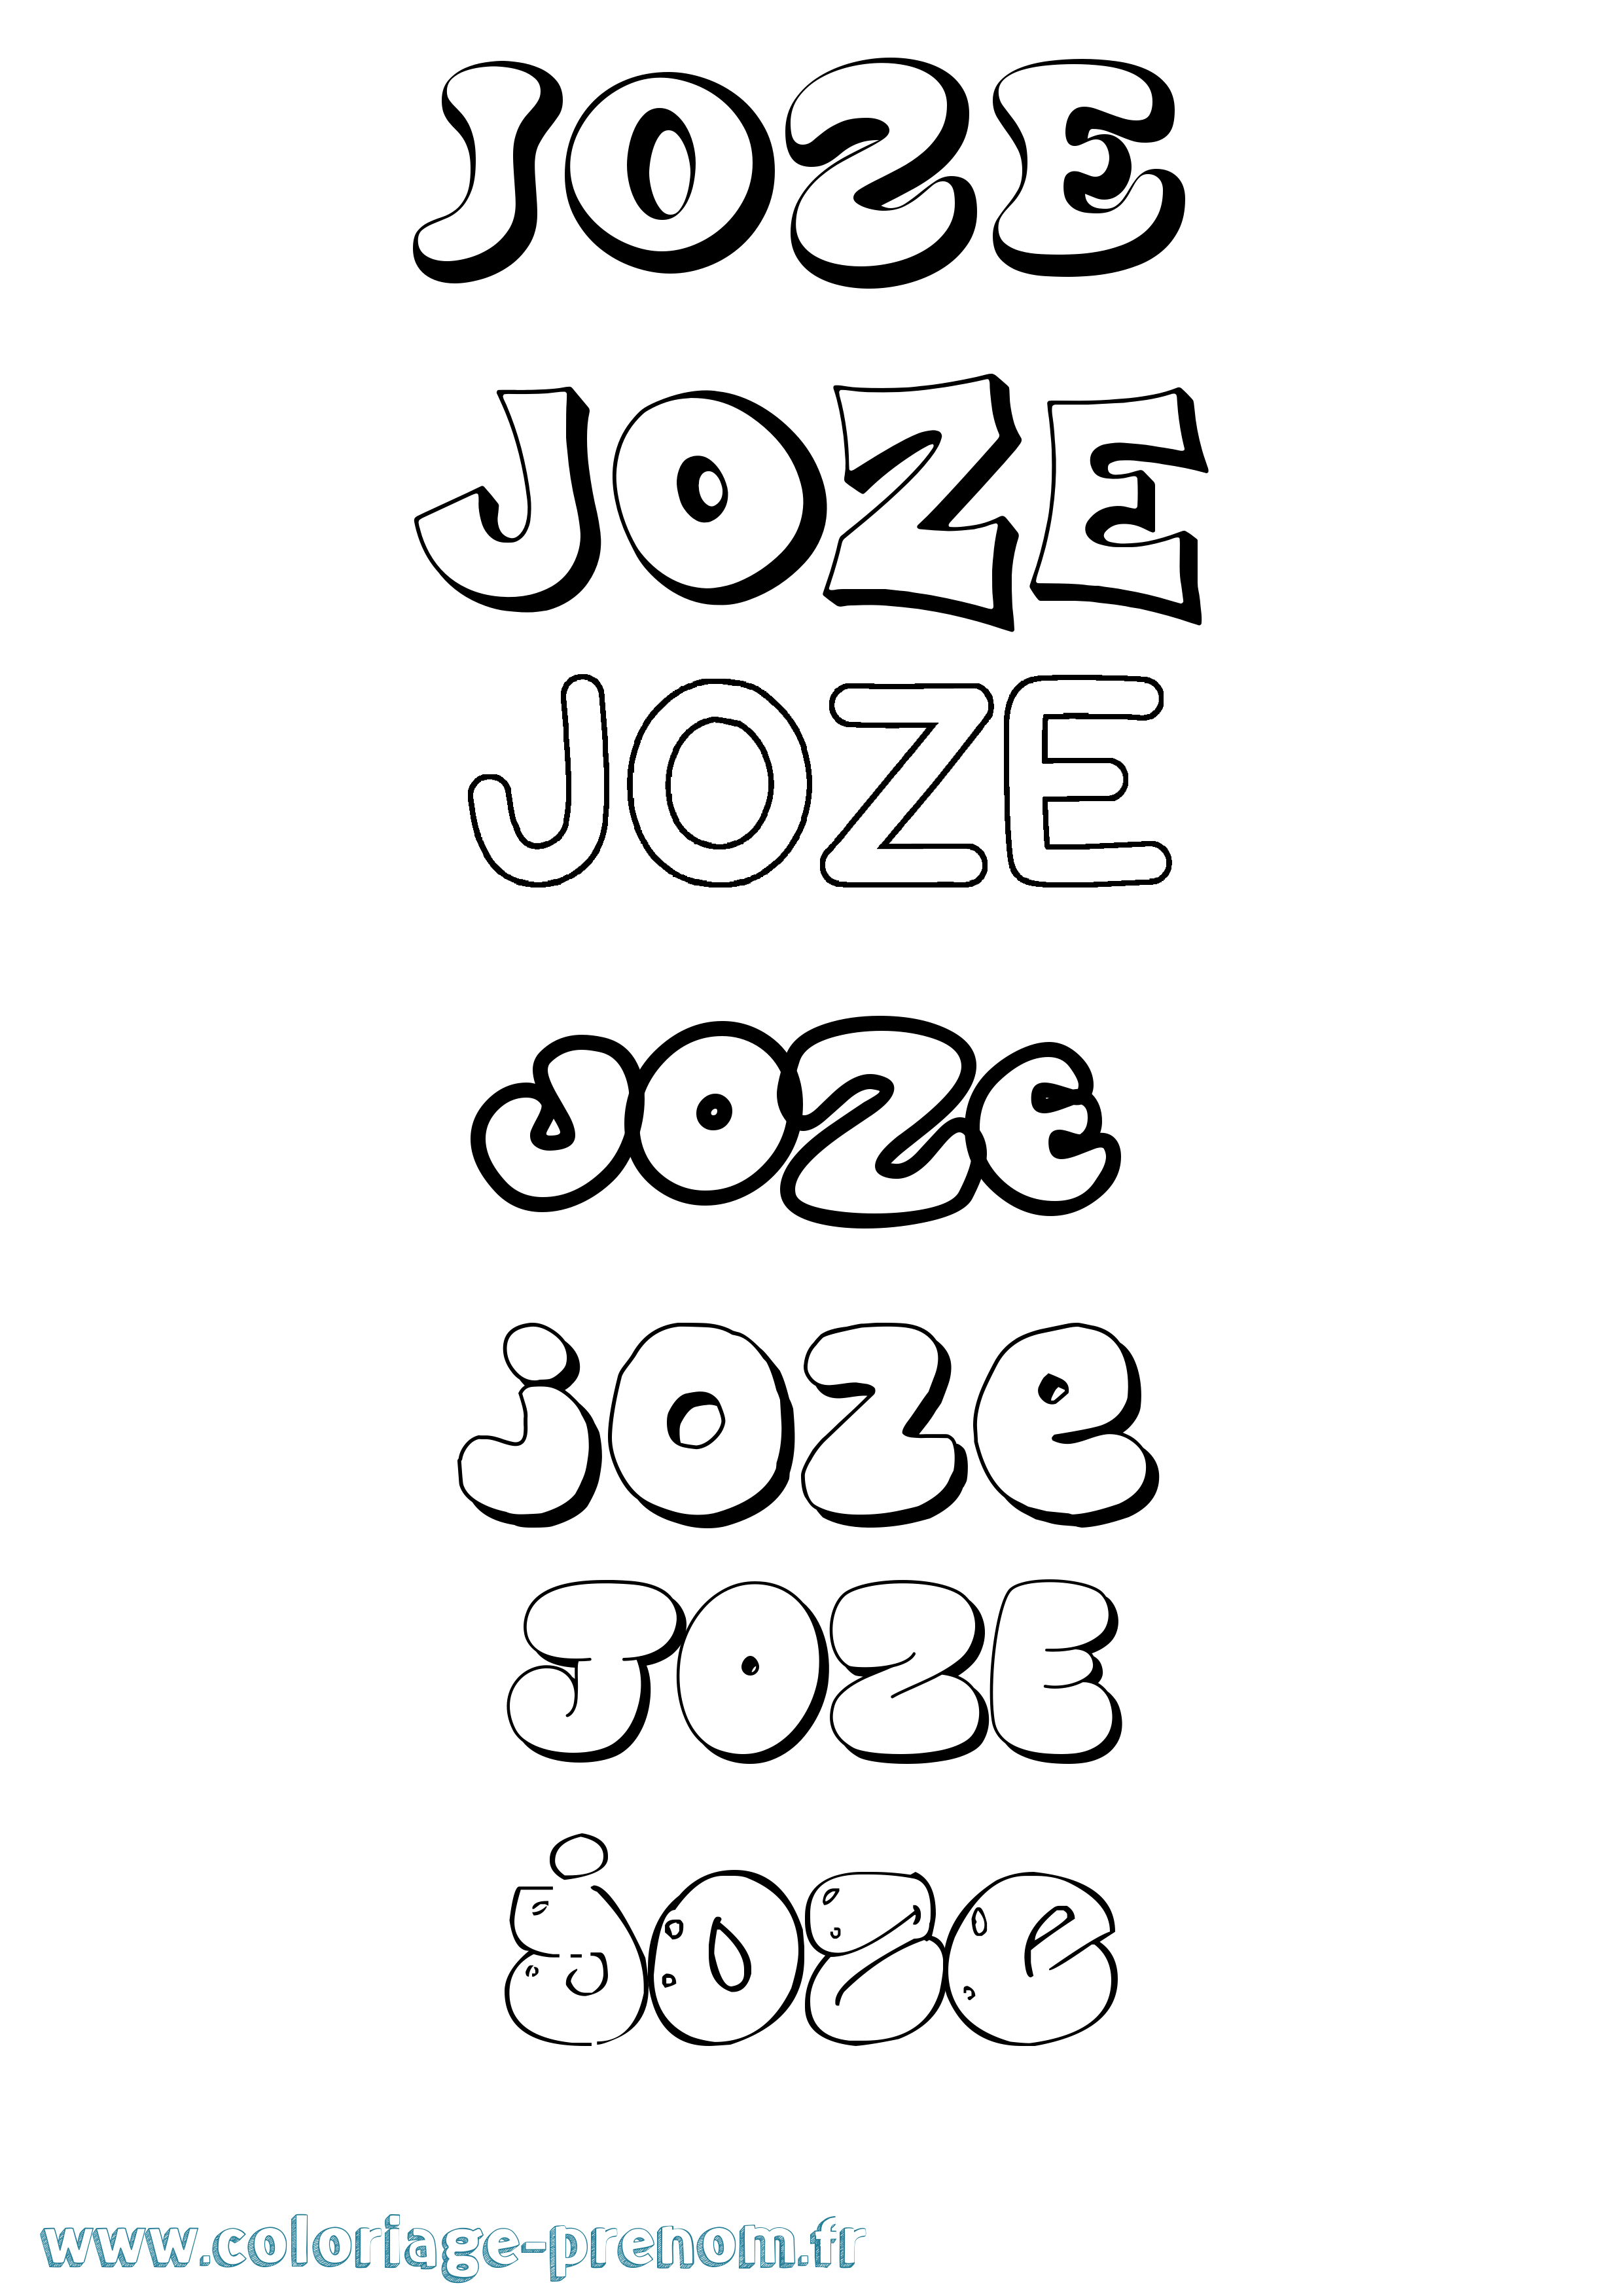 Coloriage prénom Joze Bubble